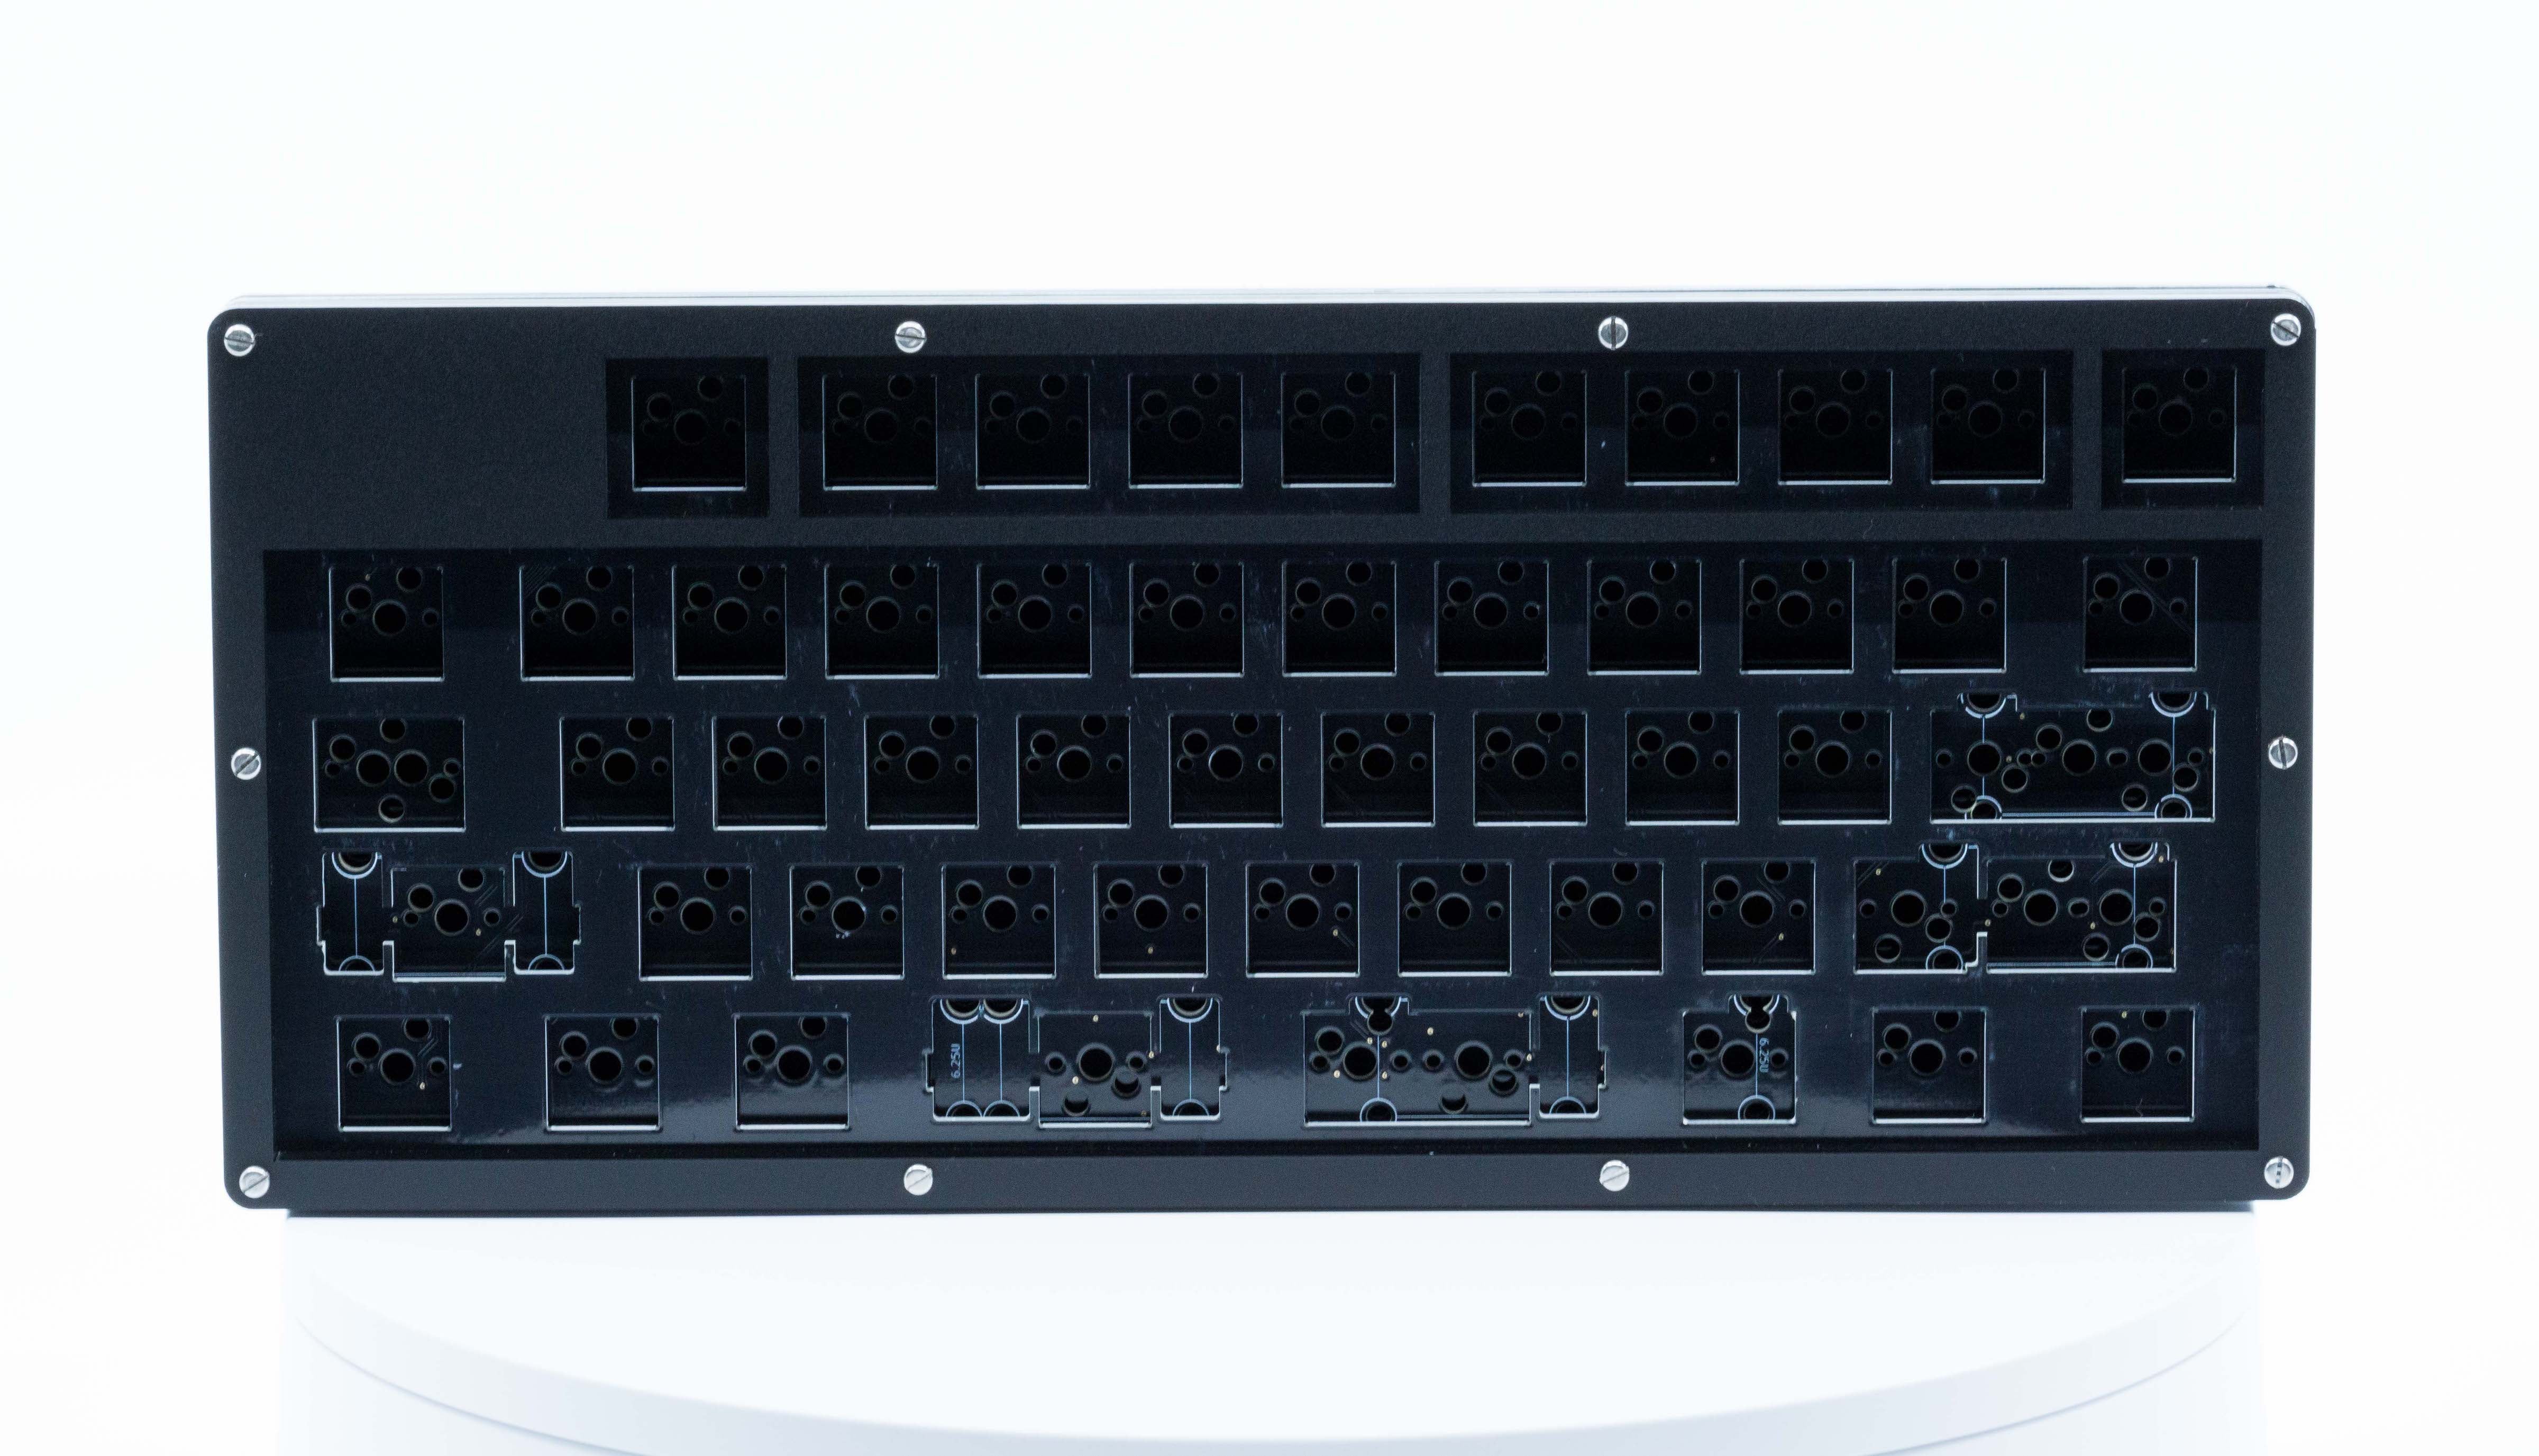 Corne Switch Plate Foam – Little Keyboards